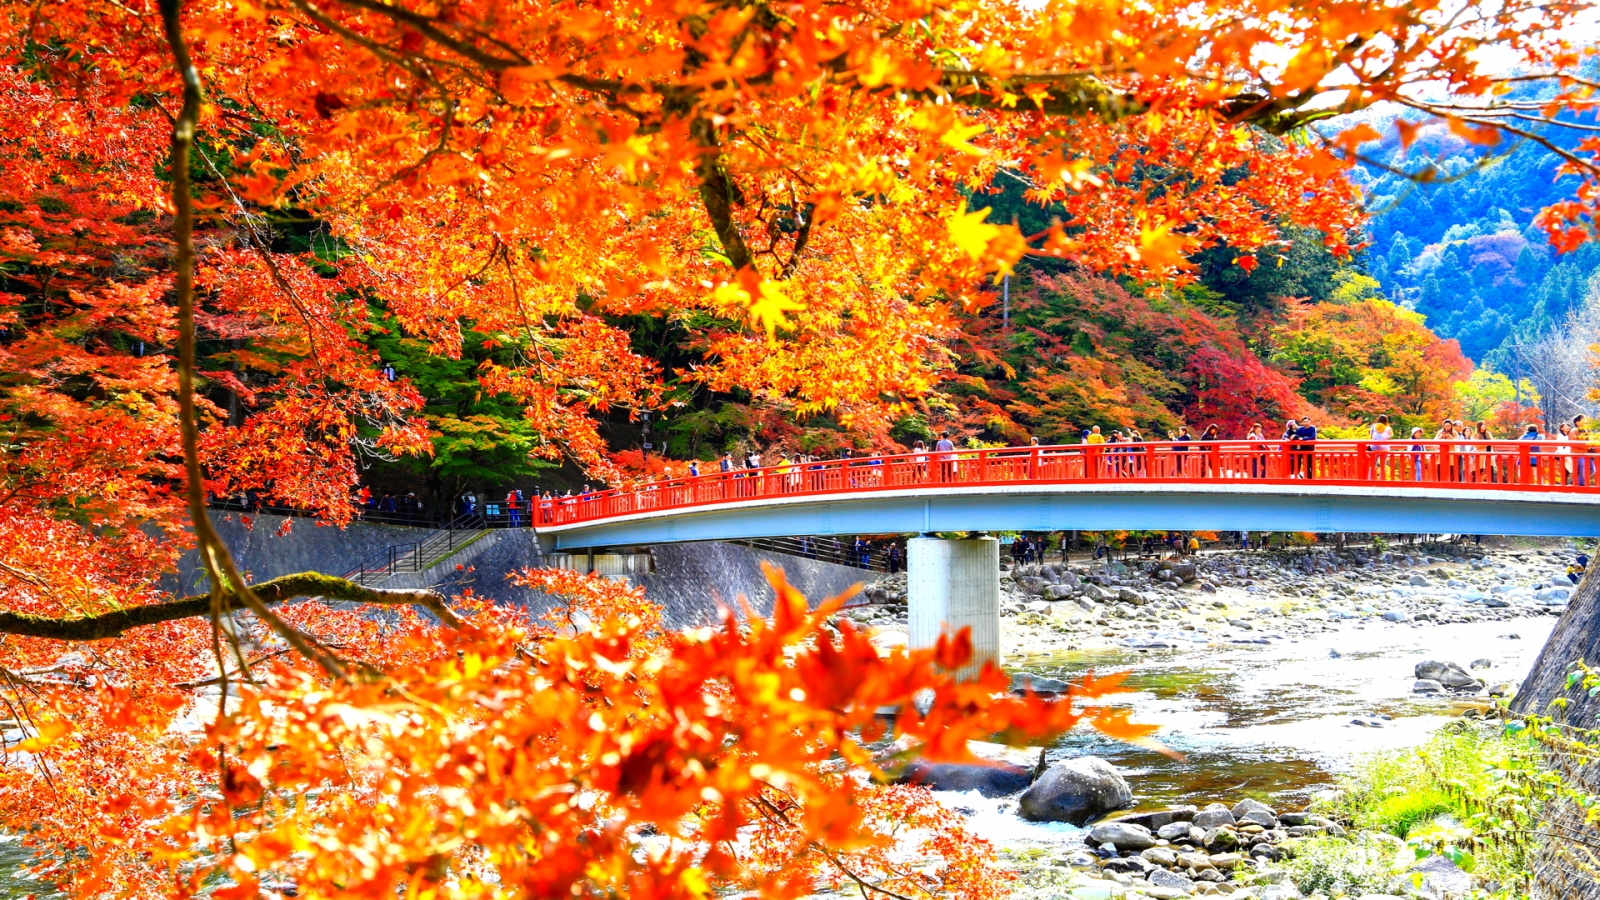 日本賞楓名所 – 豐田市香嵐溪11月紅葉盛況。